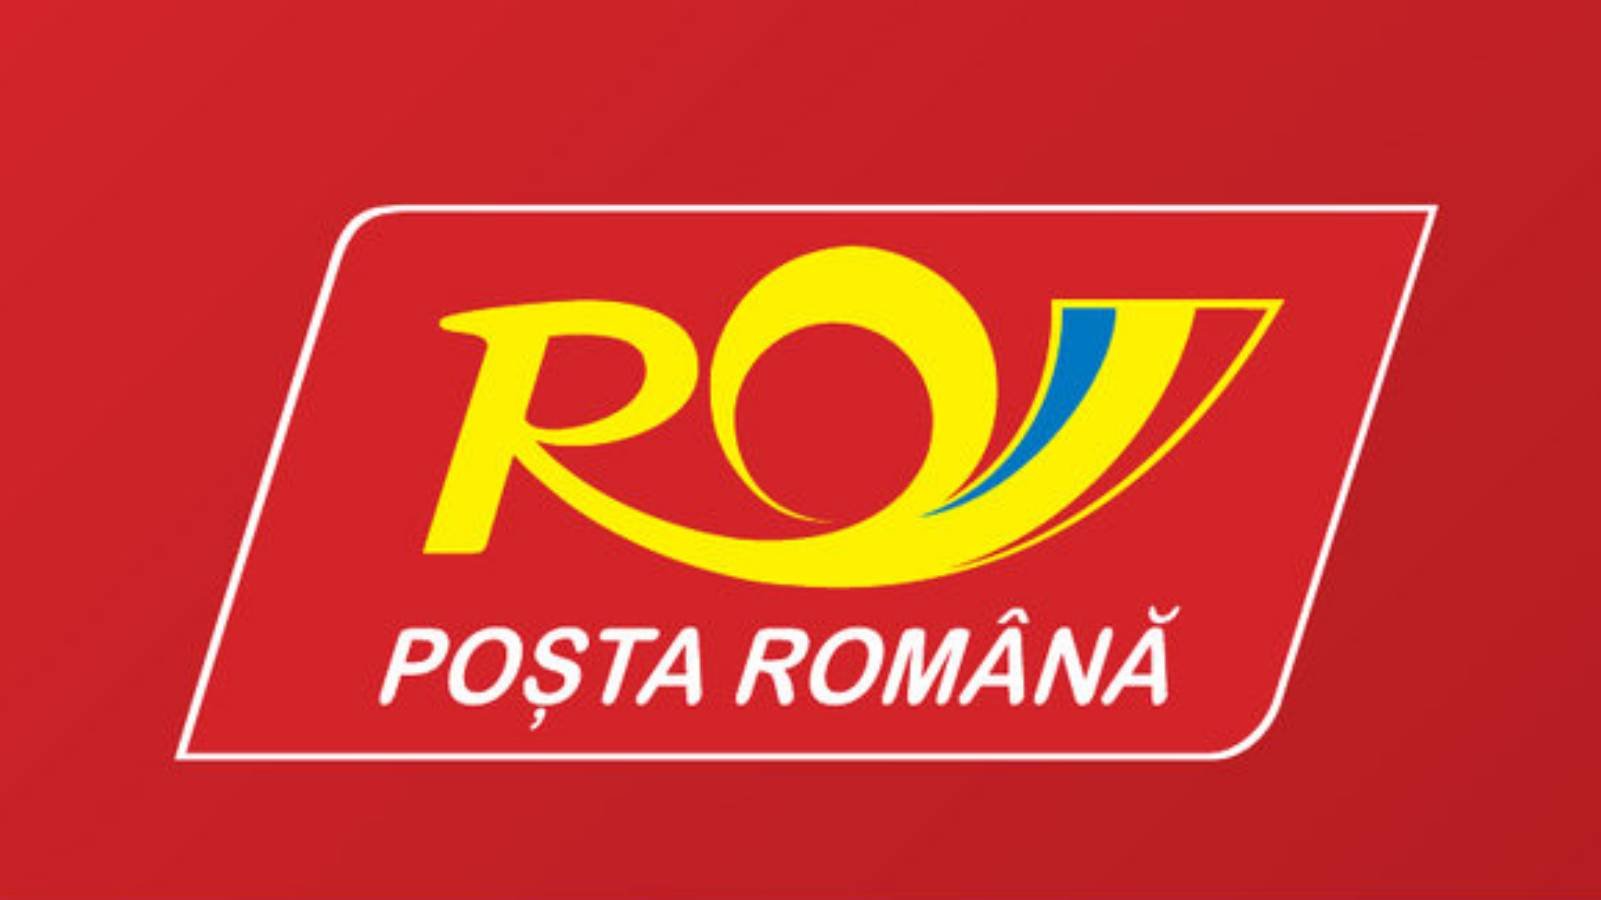 Annonce de l'application téléphonique de la poste roumaine